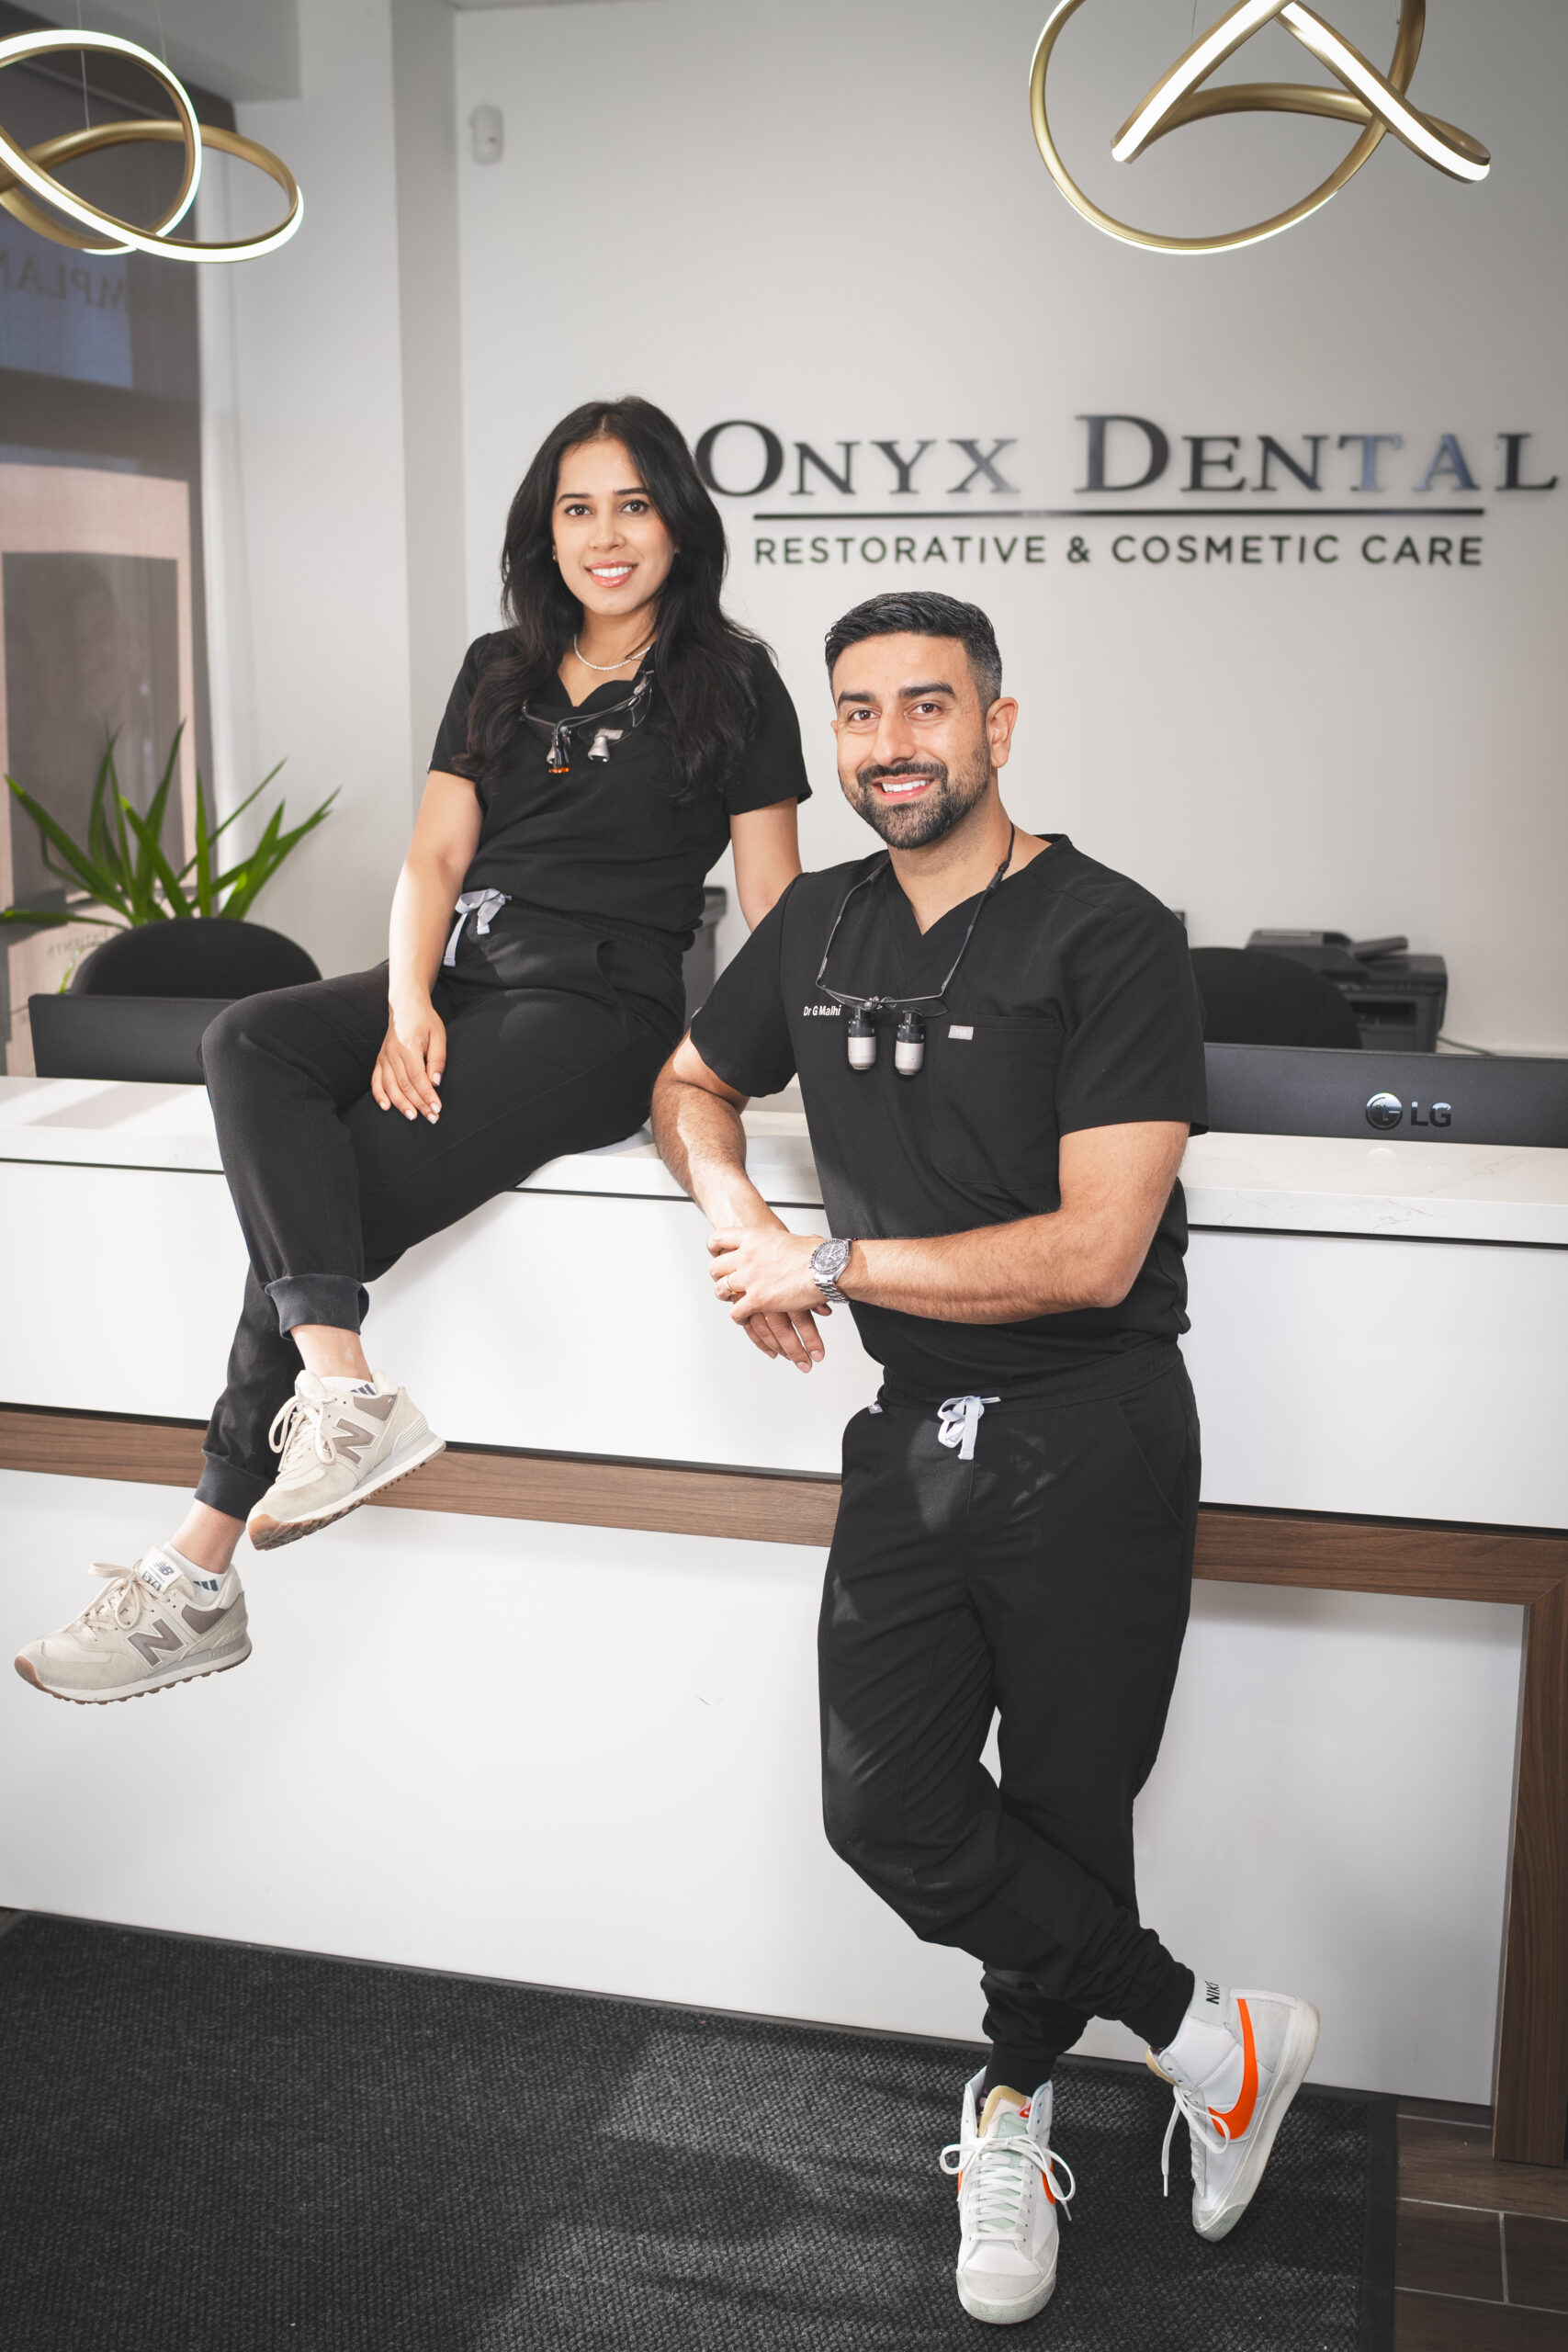 Home Video - Onyx Dental